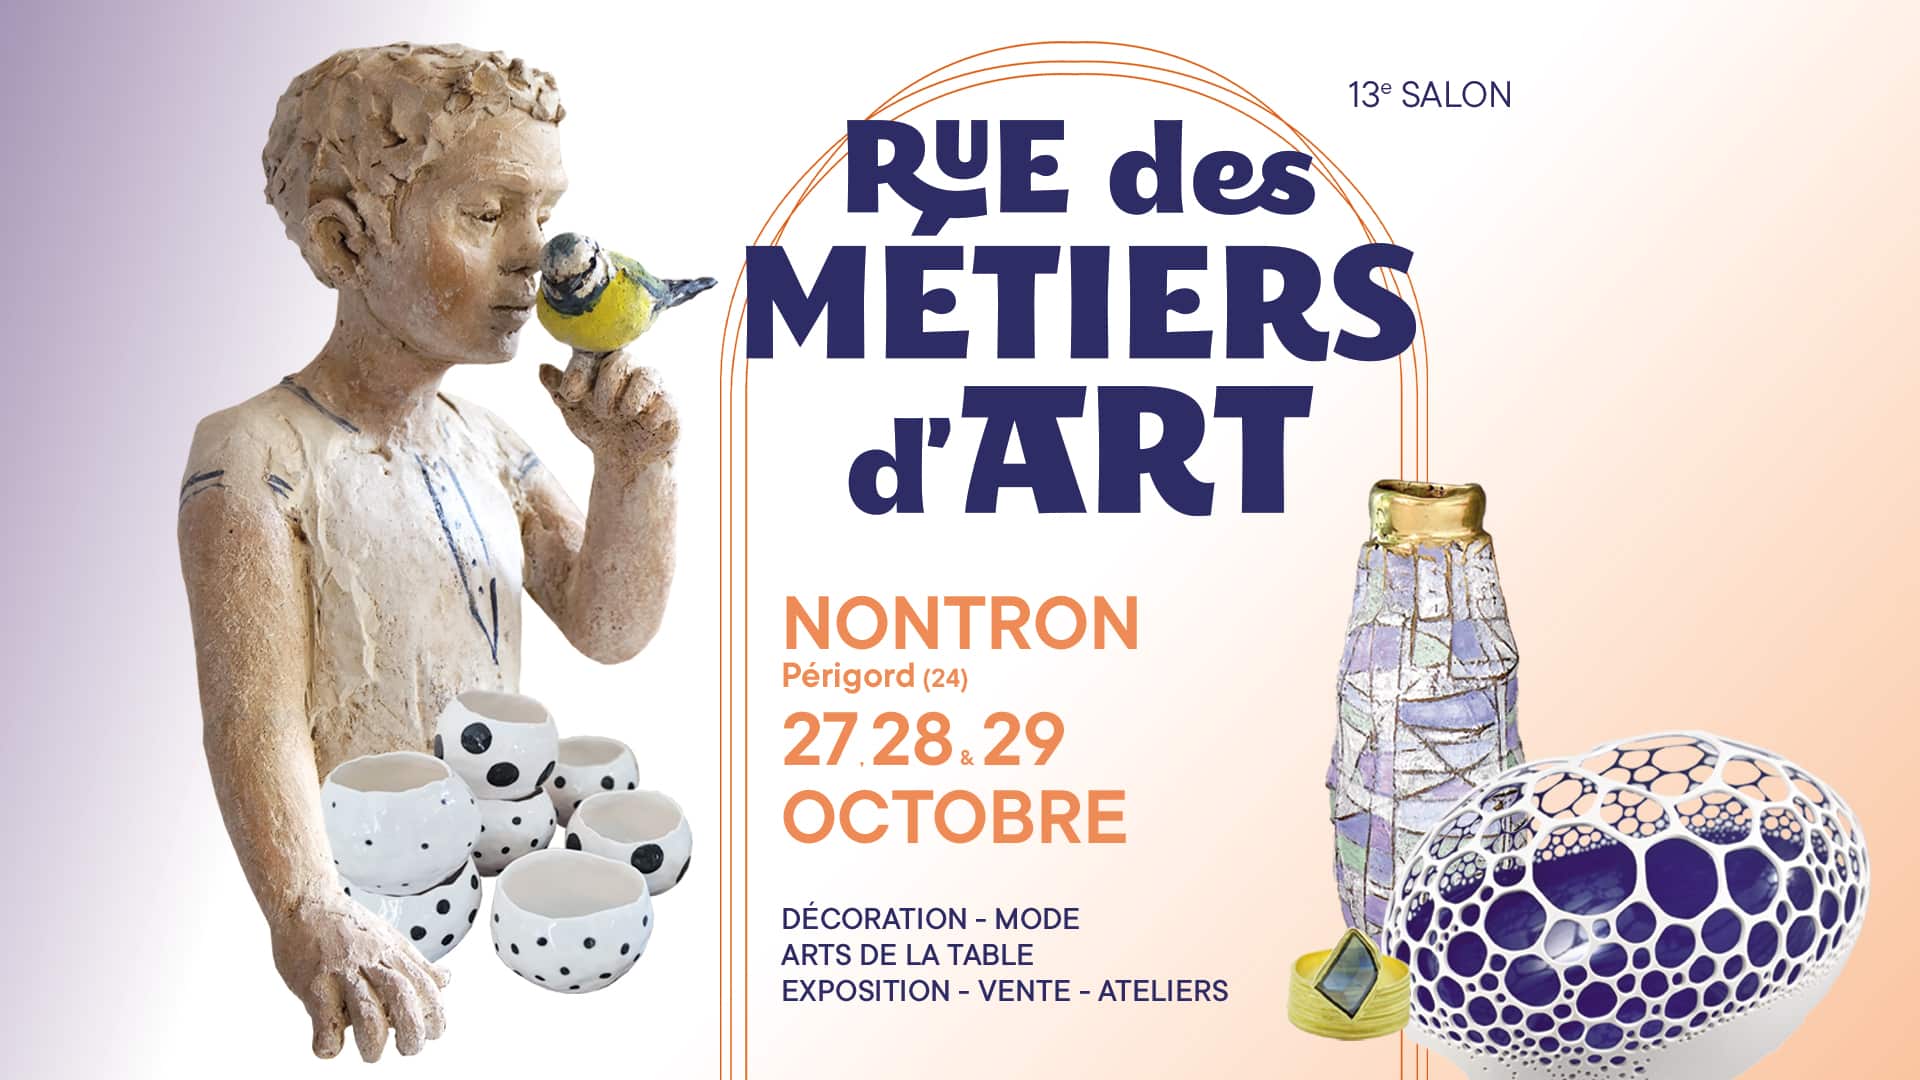 13e Salon Rue des Métiers d'Art de Nontron